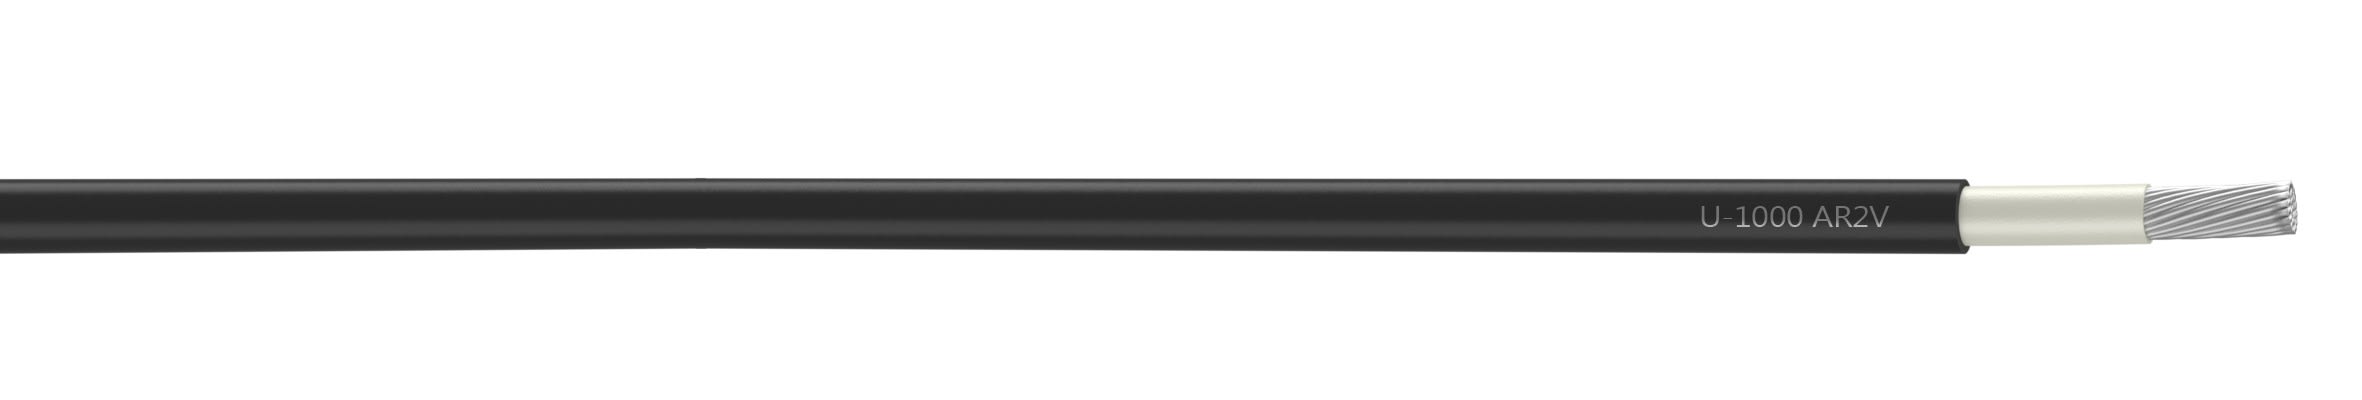 Nexans - Câble rigide U-1000 AR2V aluminium 1x240 longueur à la coupe